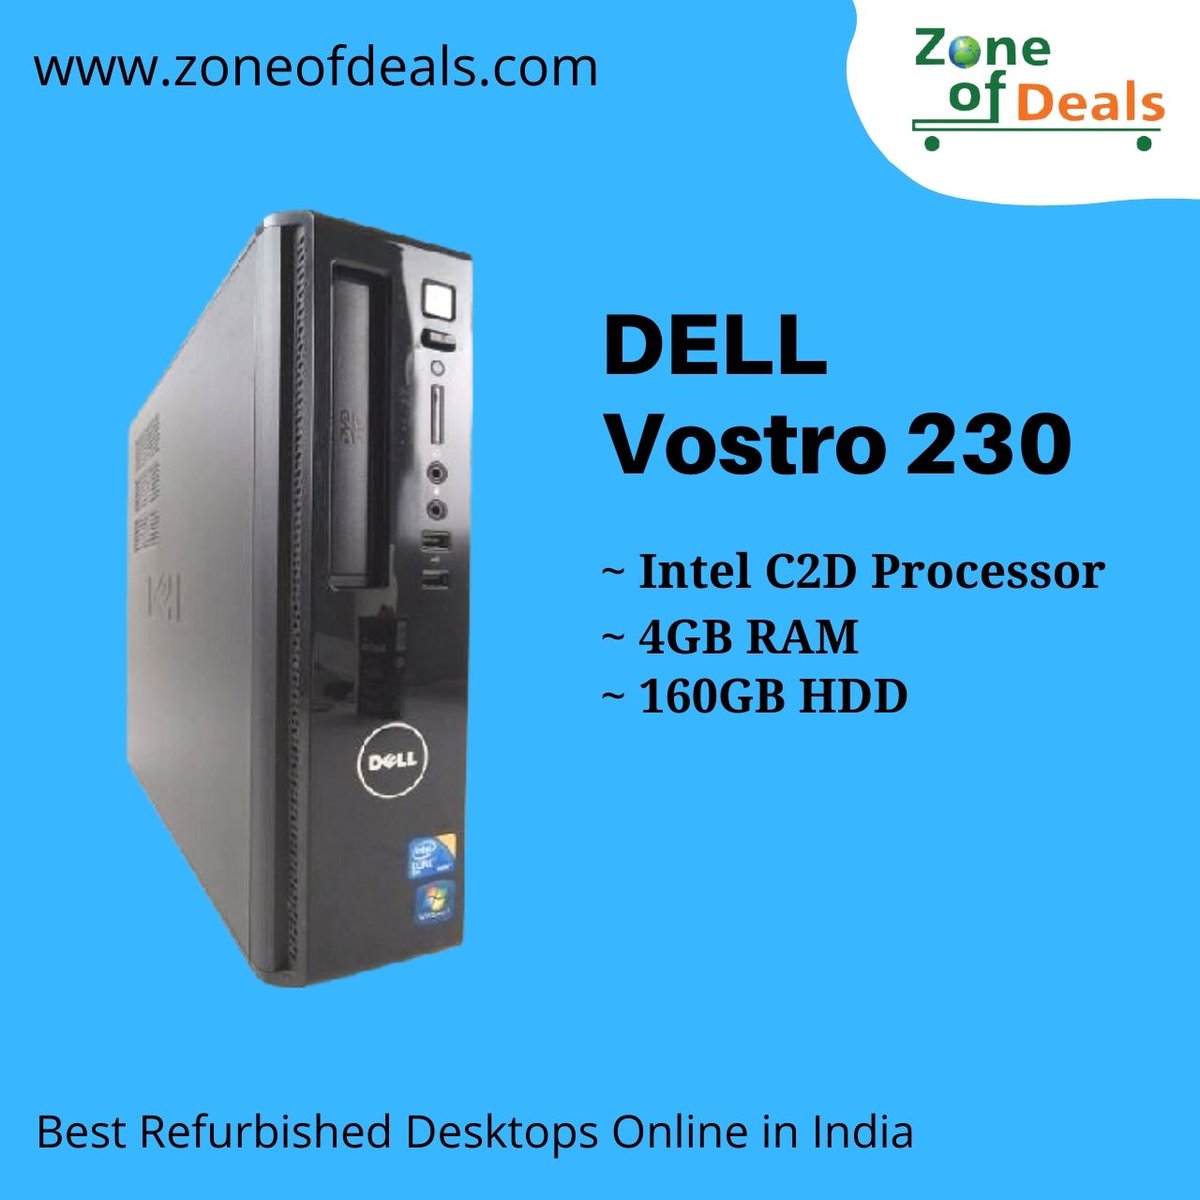 Dell Vostro 230 | Core 2 Duo | 4GB+160GB | Refurbished Desktop - Refurbished MINI PC .
Cash On Delivery Also Available.
Safe Shipping Through Reputed Courier Services.
#dellpc  #dellindia  #computersystem #dellvostro
#dellpc 
#refurbishedpc
#corei5 
#minipc 
#tinypc